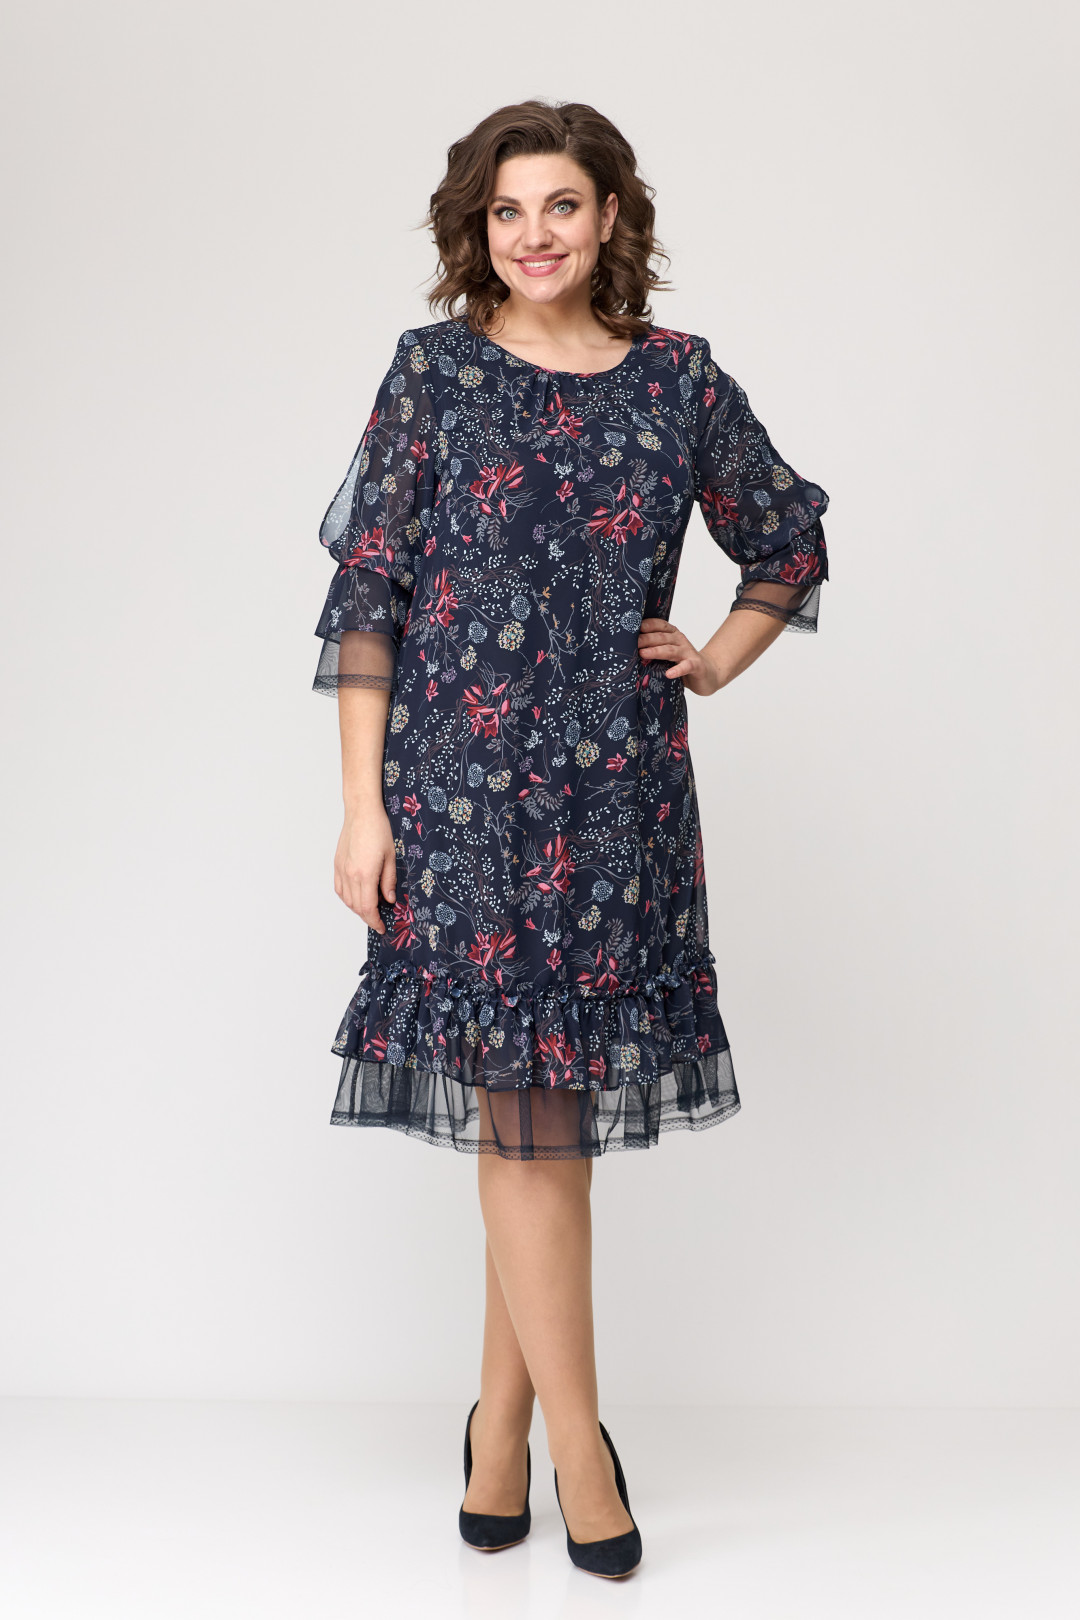 Платье Мода-Версаль 2205 индиго